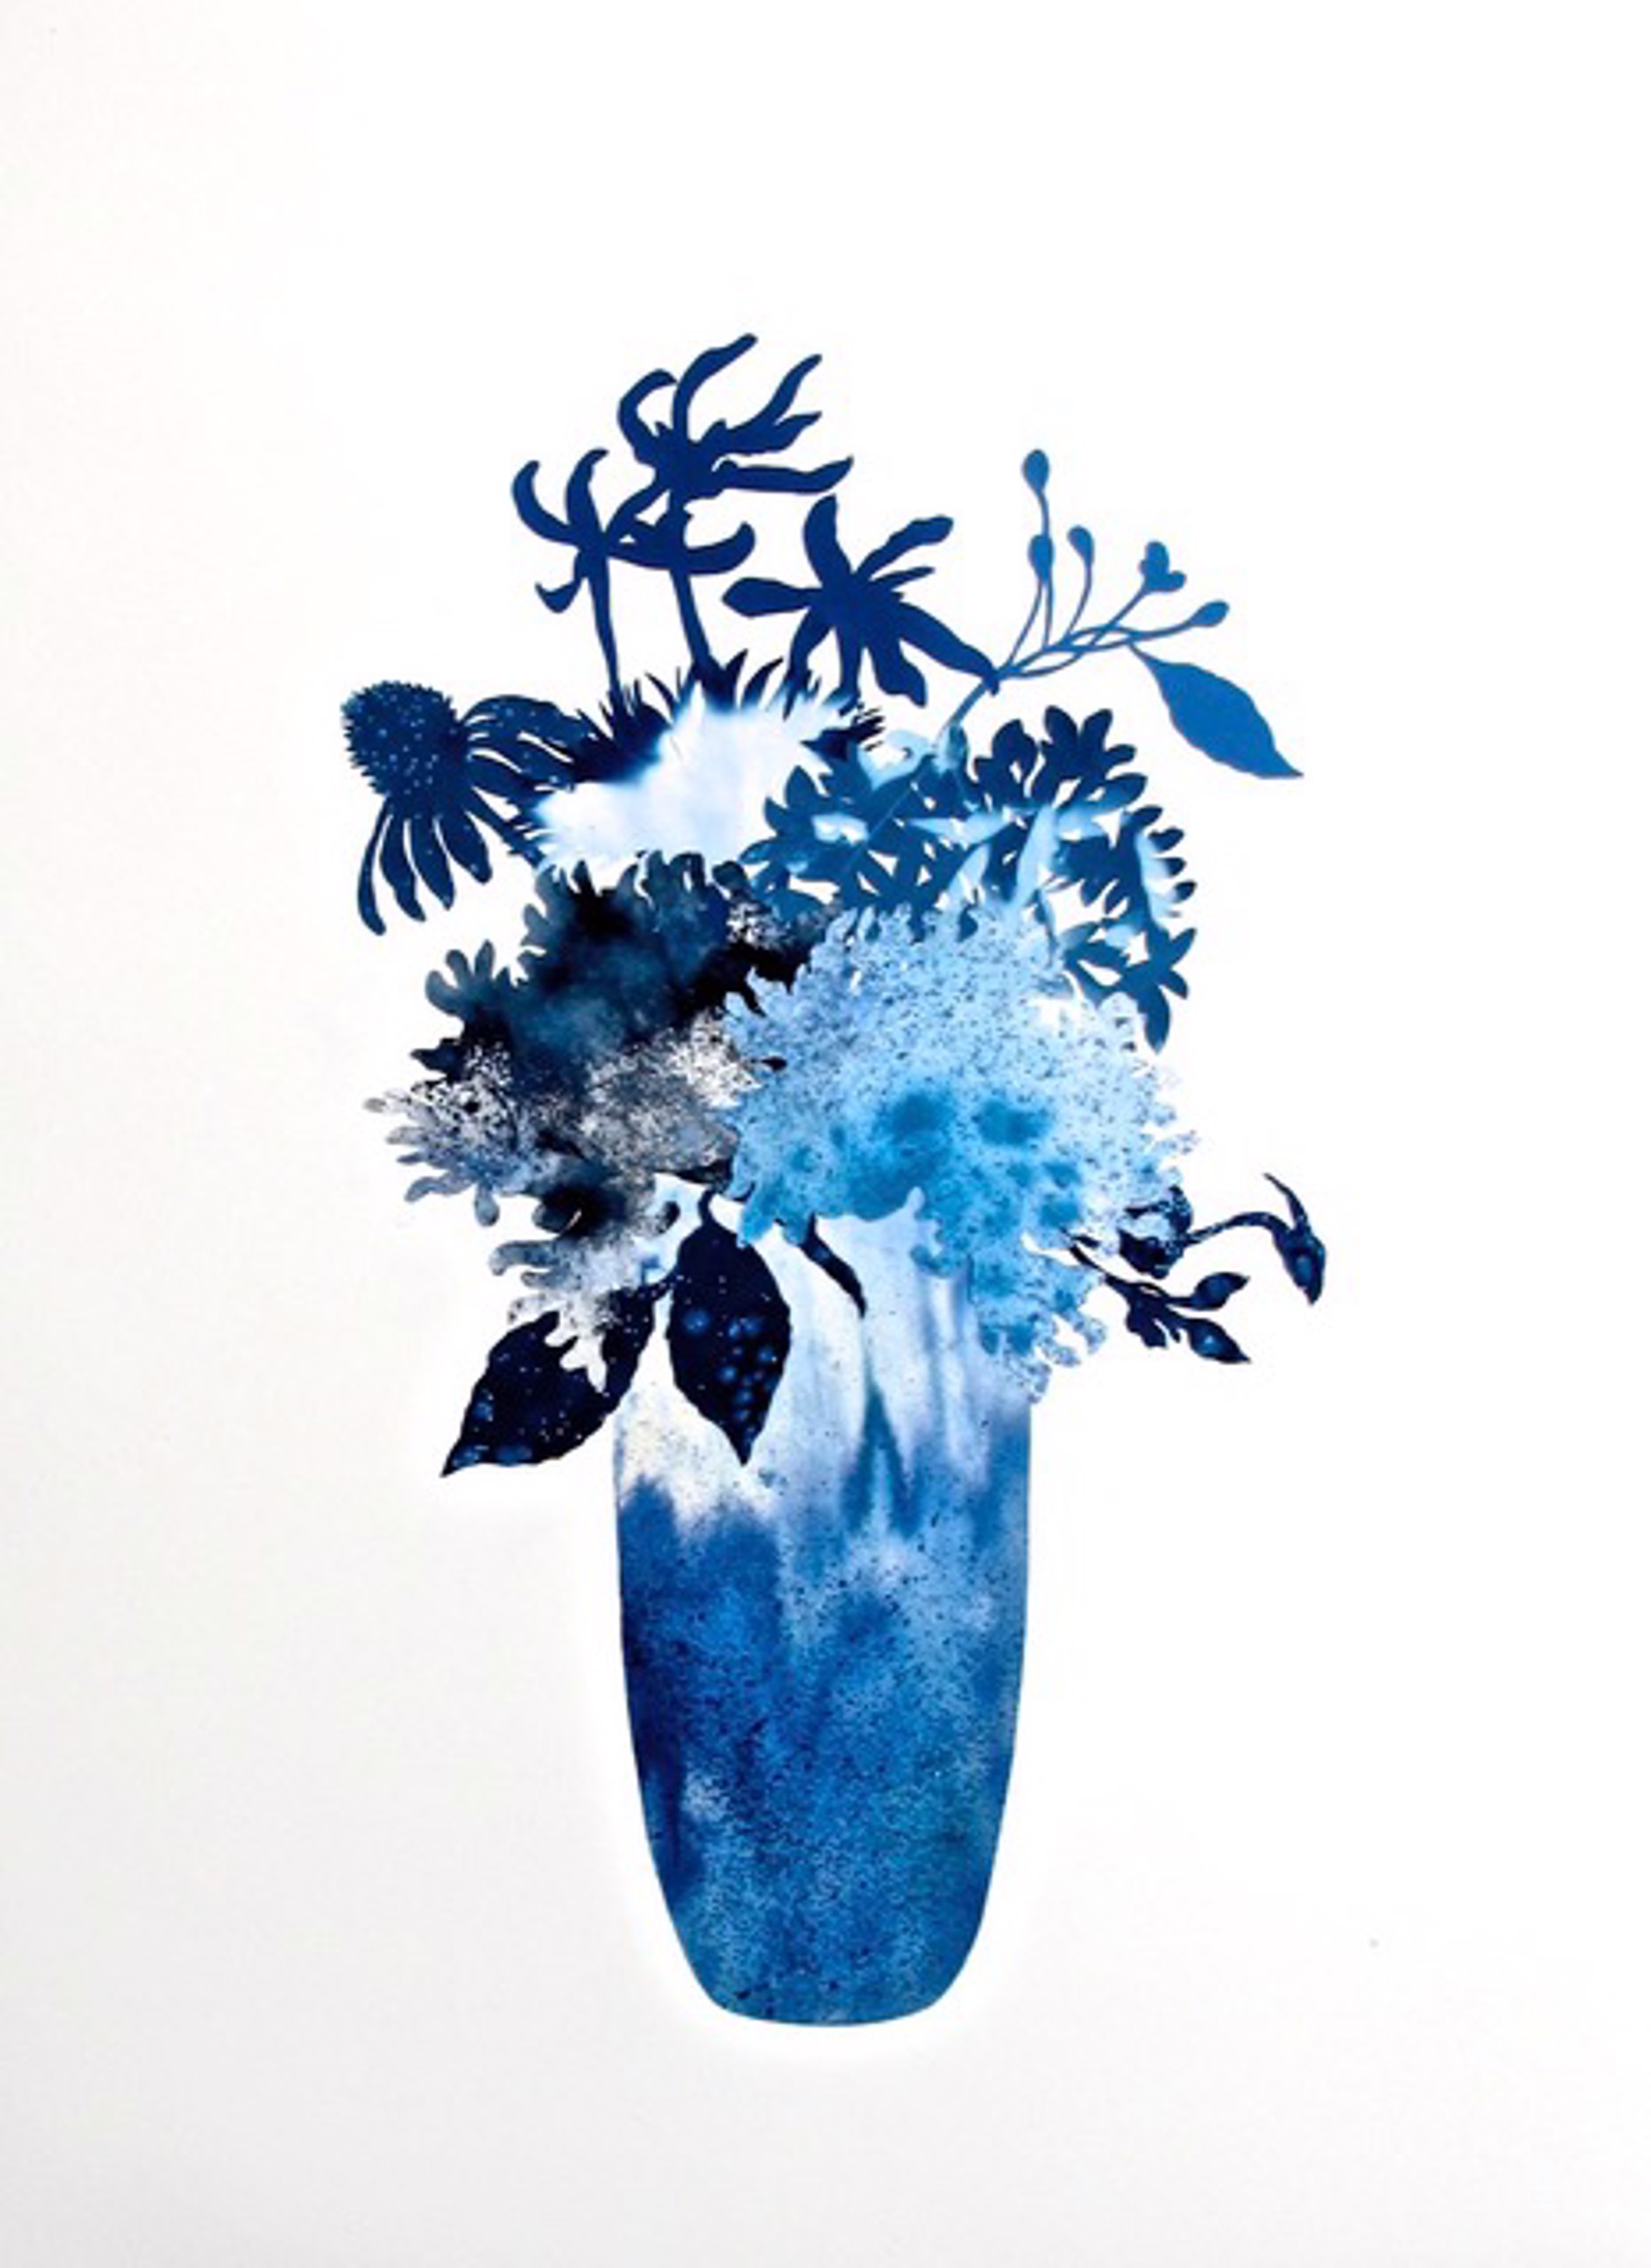 Evening Blooms Series 23-1 by Deborah Weiss